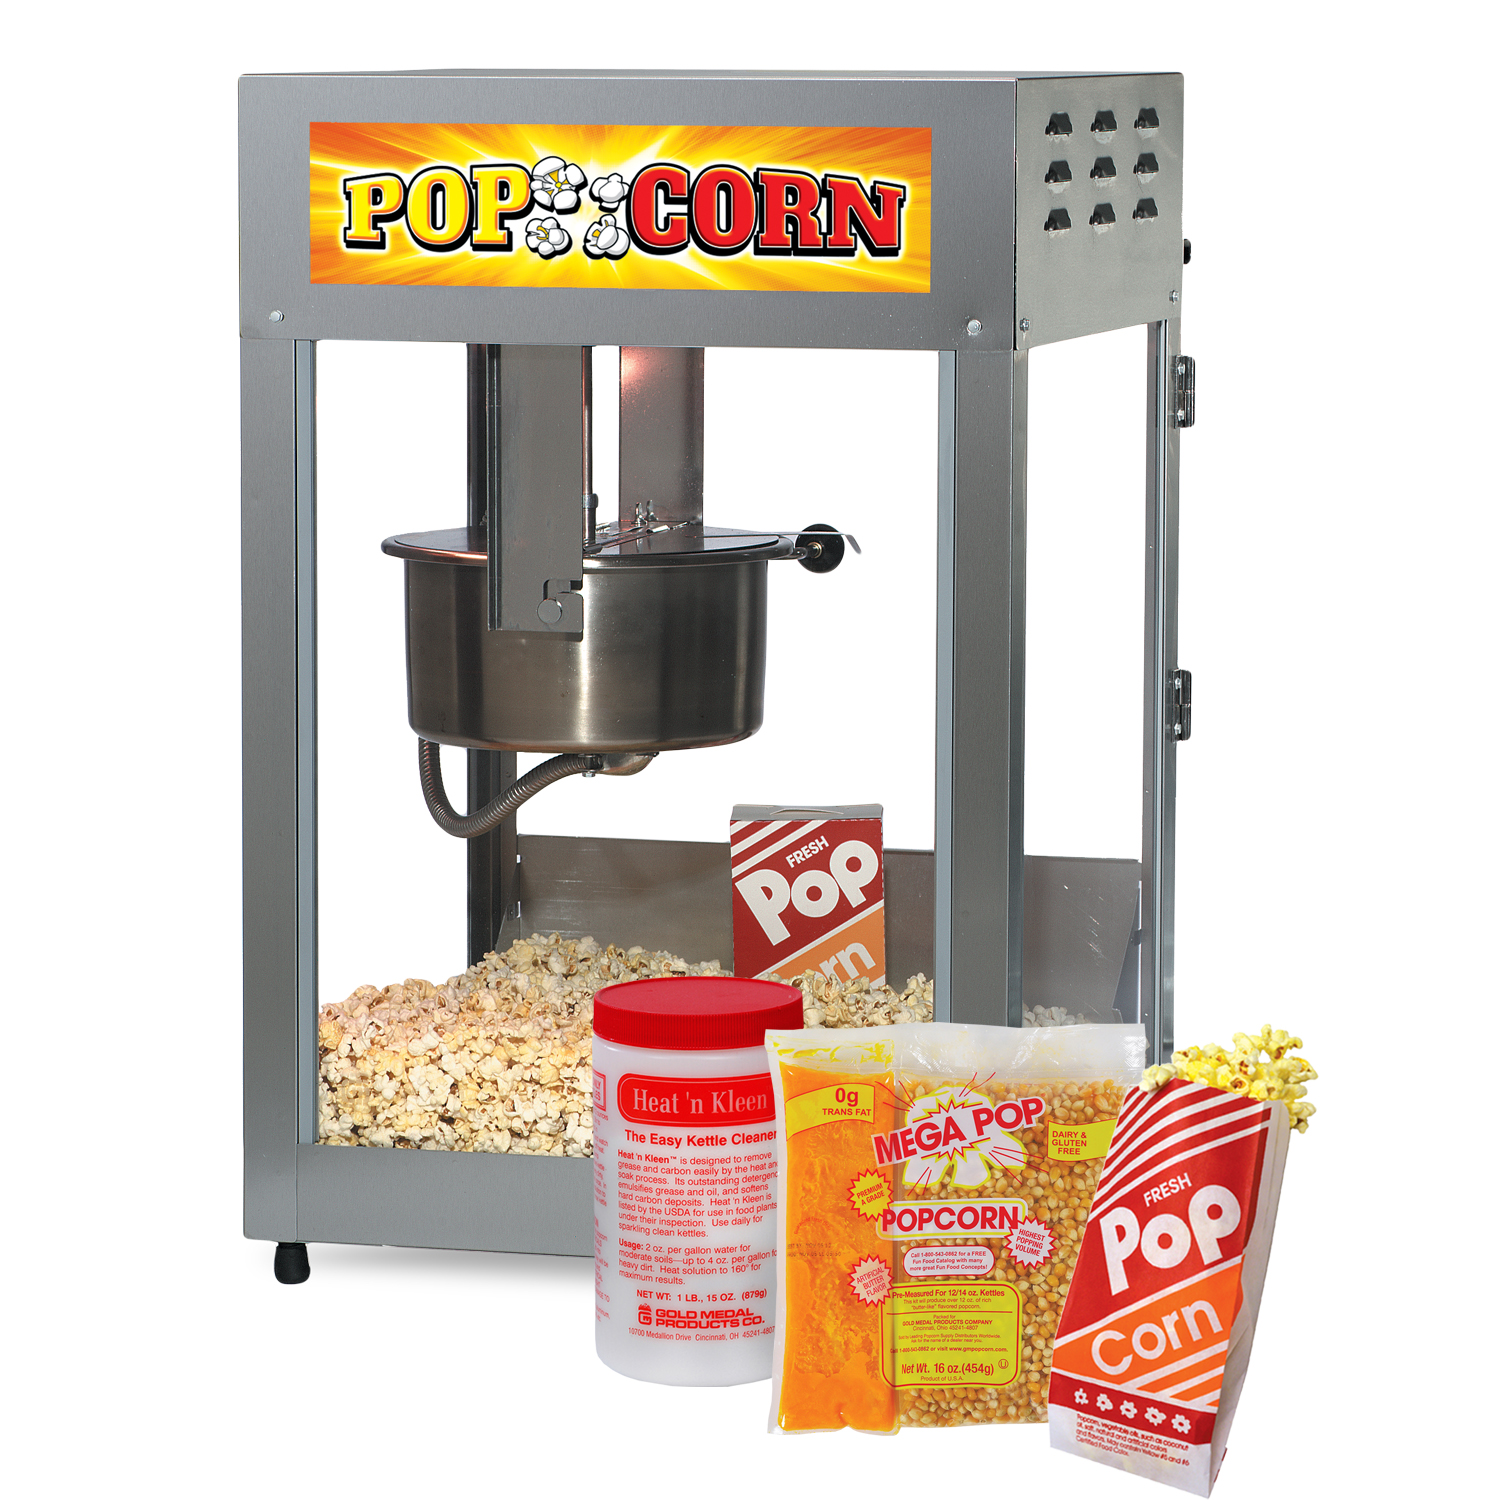 https://gmpdealer.com/dev/2017_Website-Product_Images_Final_011718/Images_1500x1500/Popcorn-12-oz-Equipment-Supplies-Starter-Package.jpg